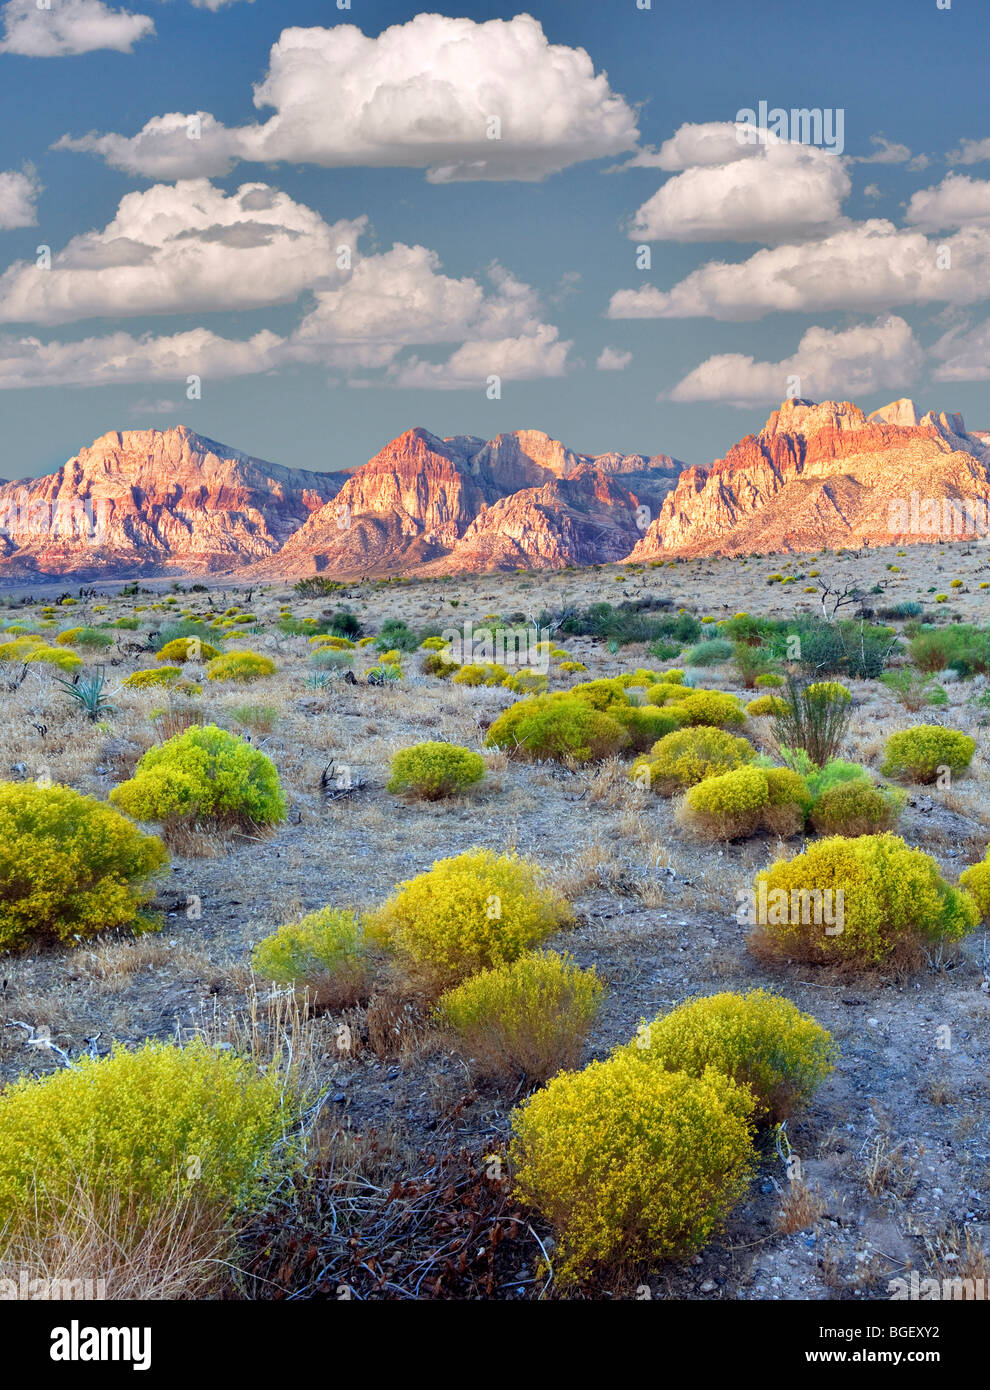 Brosse de lapin et de formations rocheuses dans le Red Rock Canyon National Conservation Area, Nevada. Sky a été ajouté. Banque D'Images